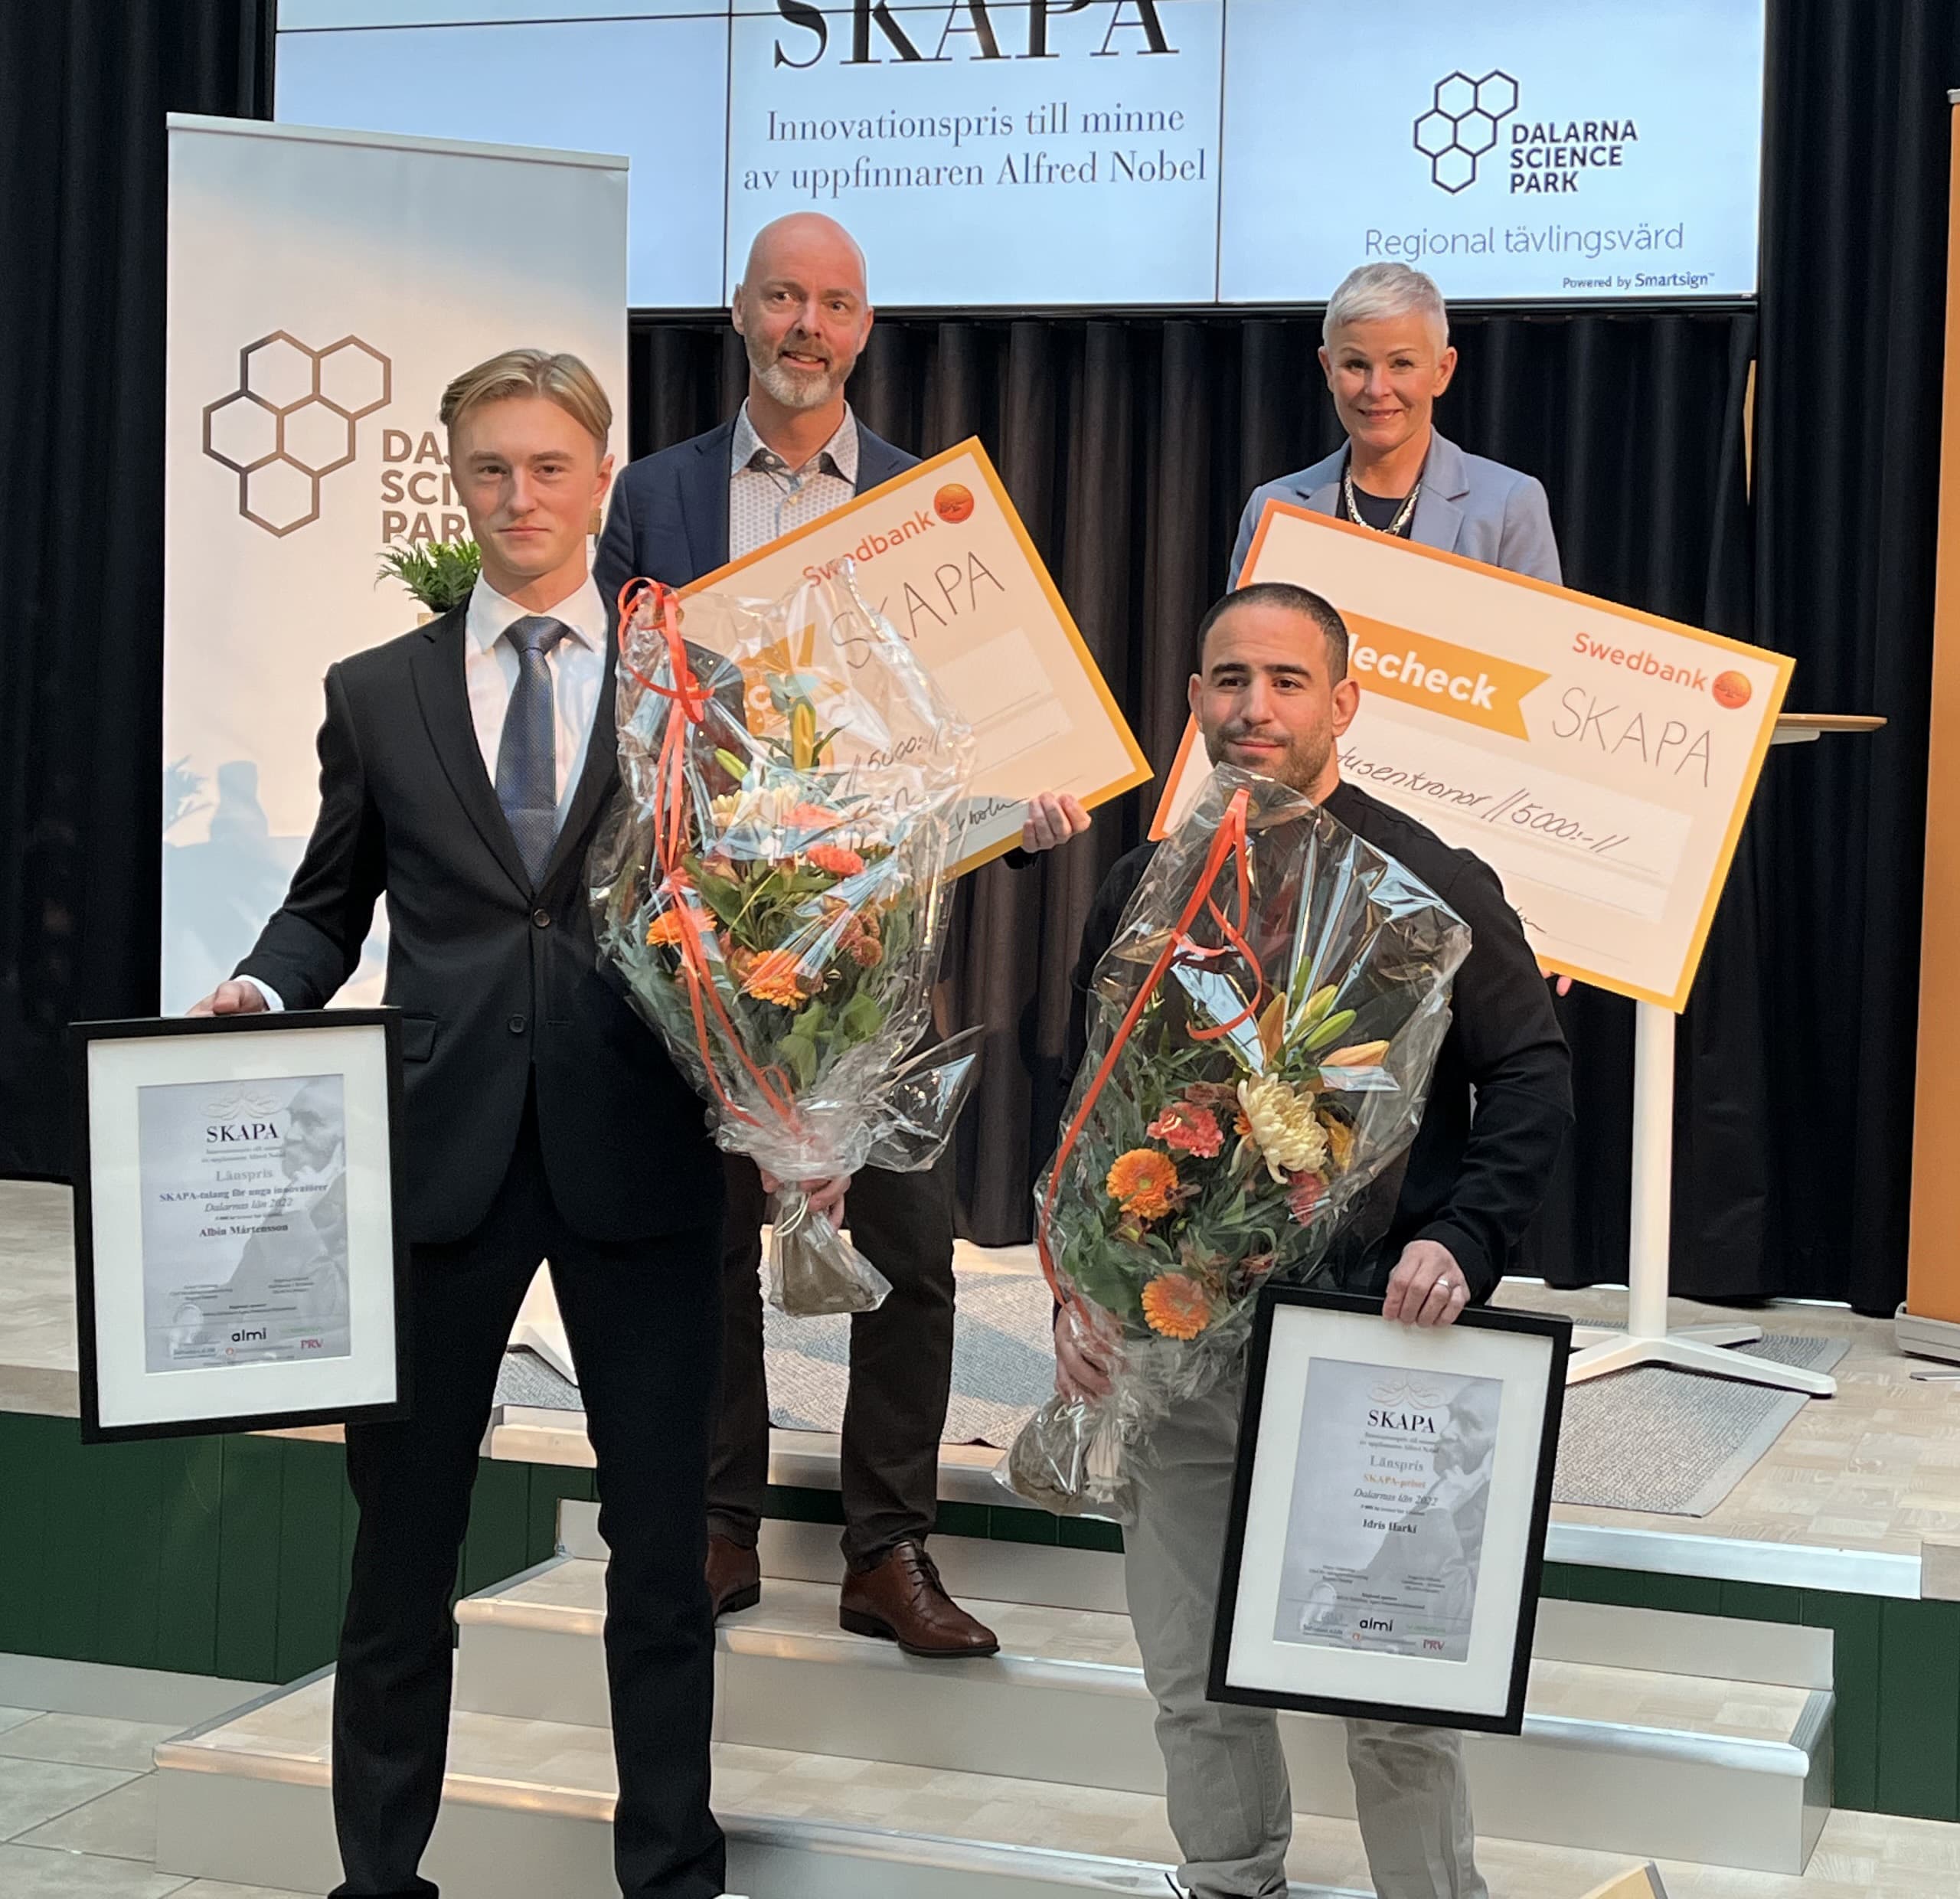 Årets SKAPA-innovatörer i Dalarna är utsedda